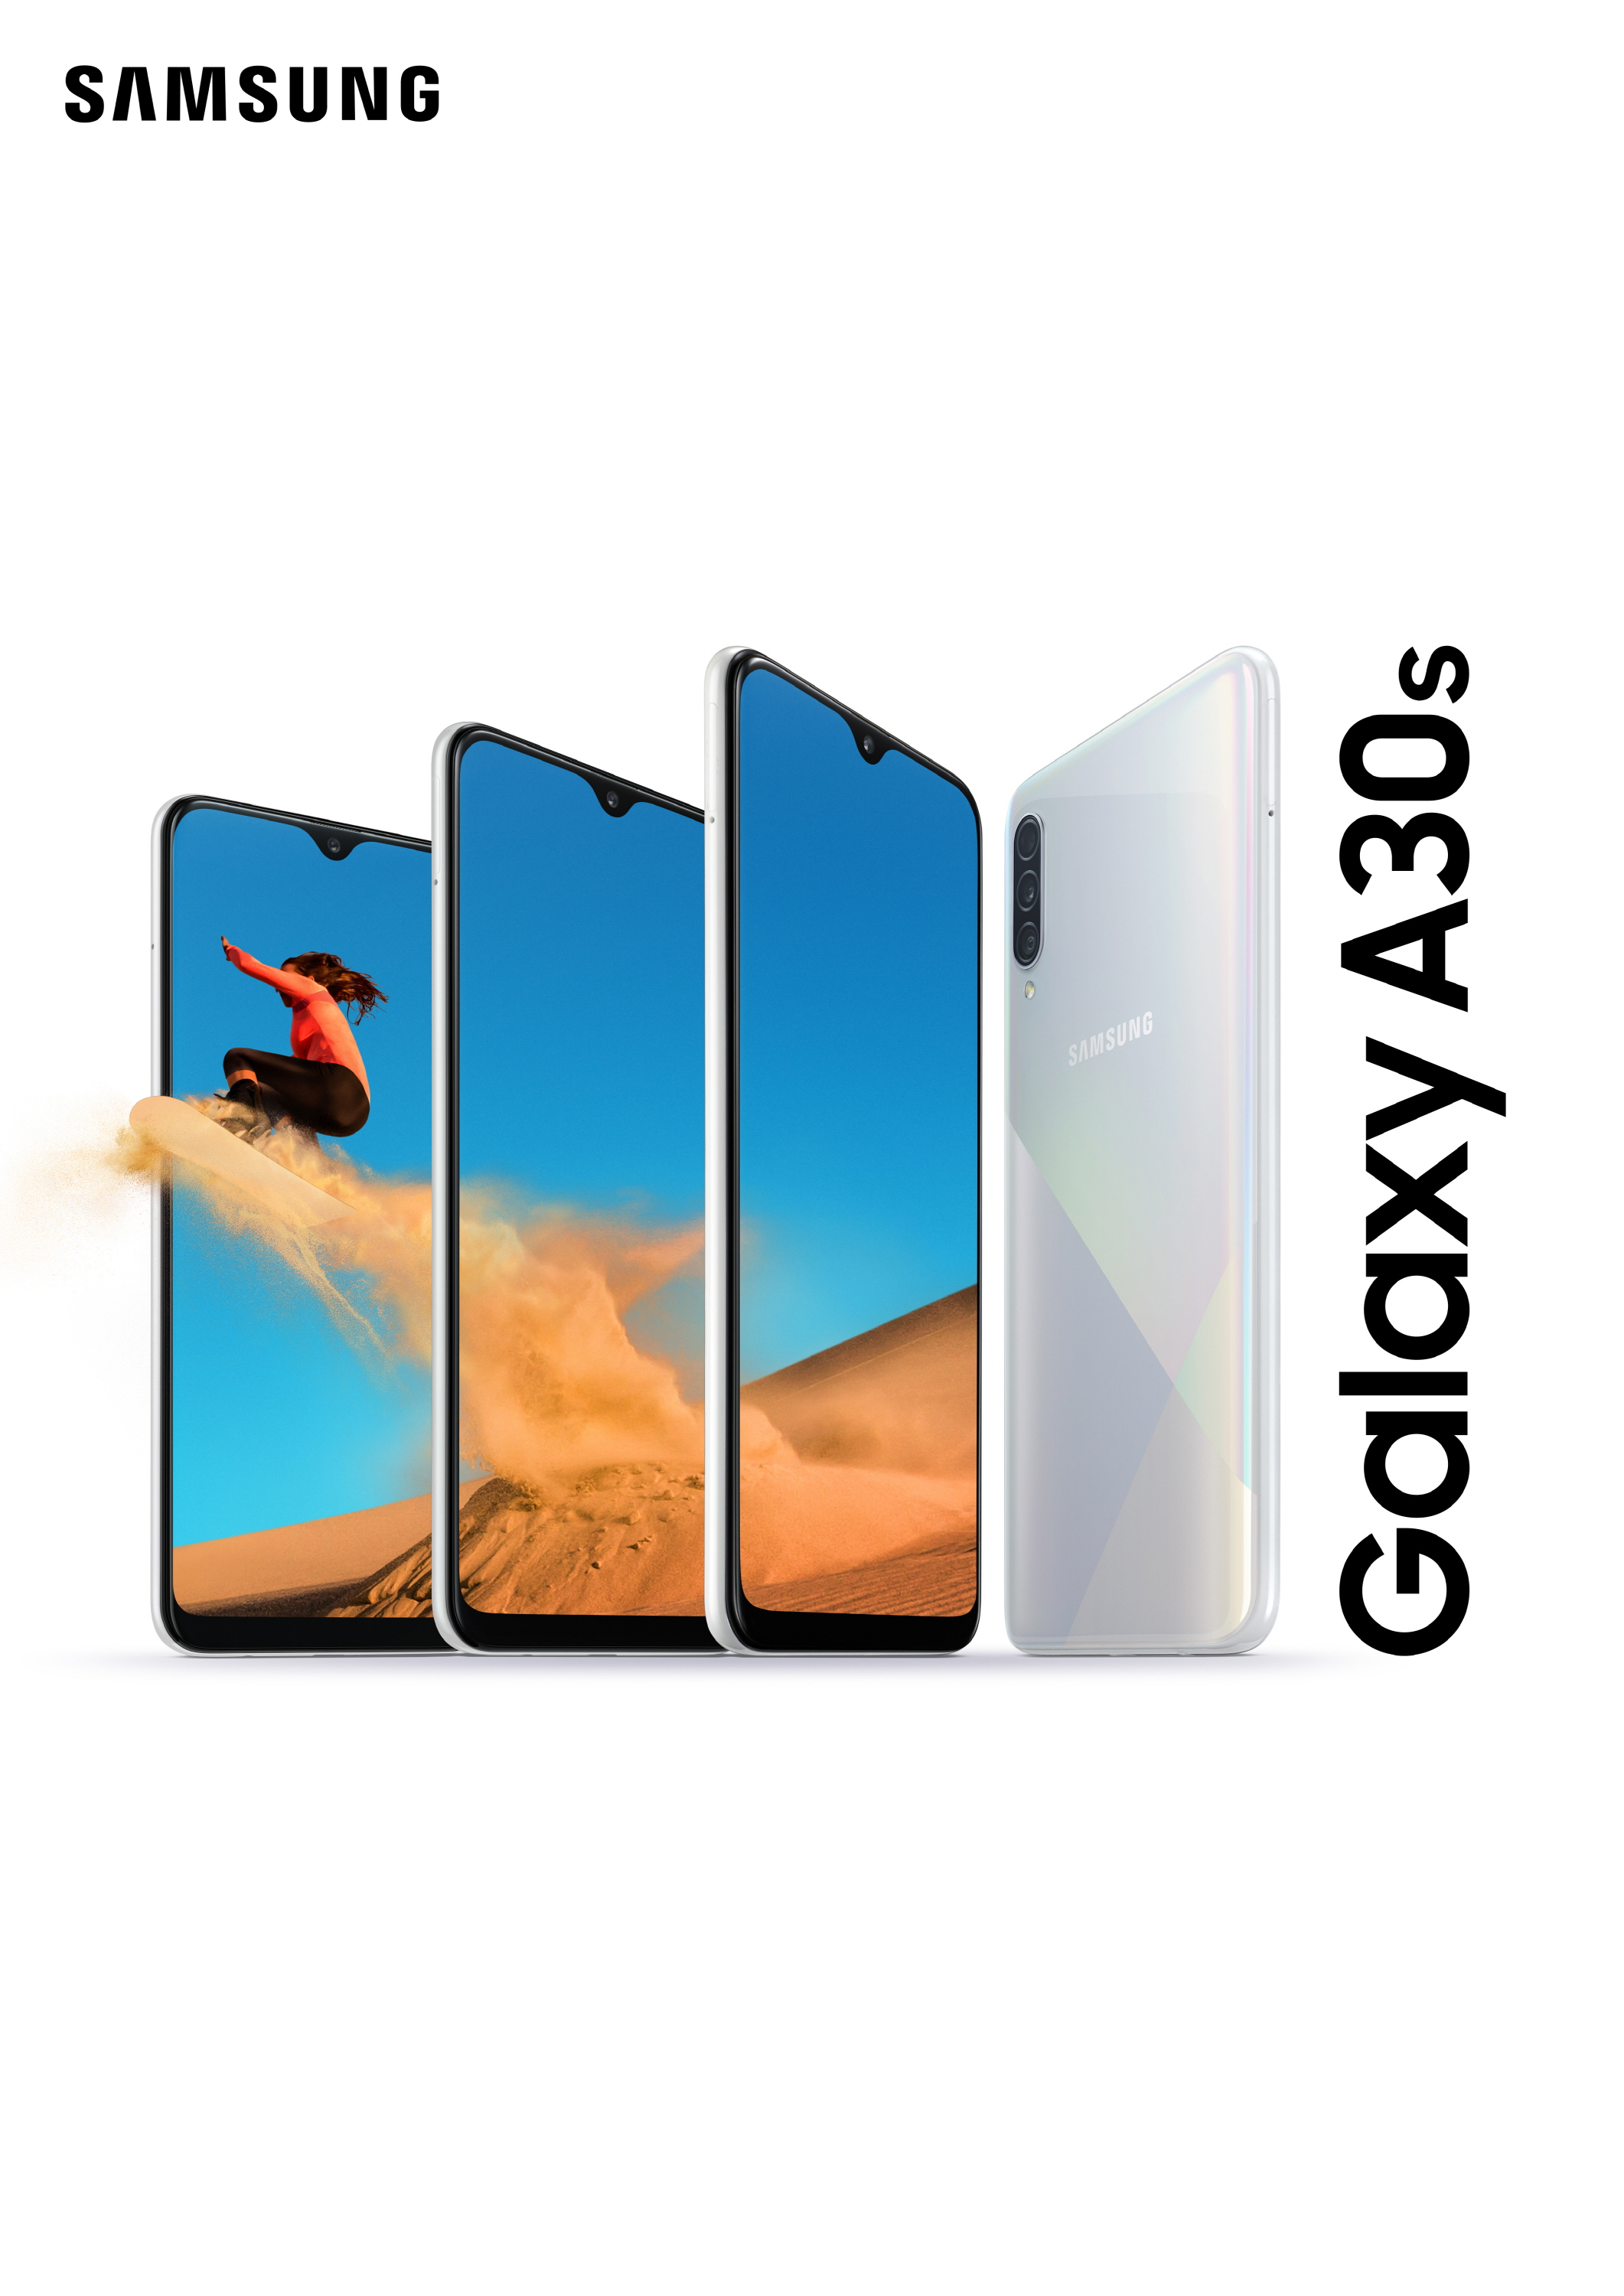 Samsung presenta il nuovo Galaxy A30s